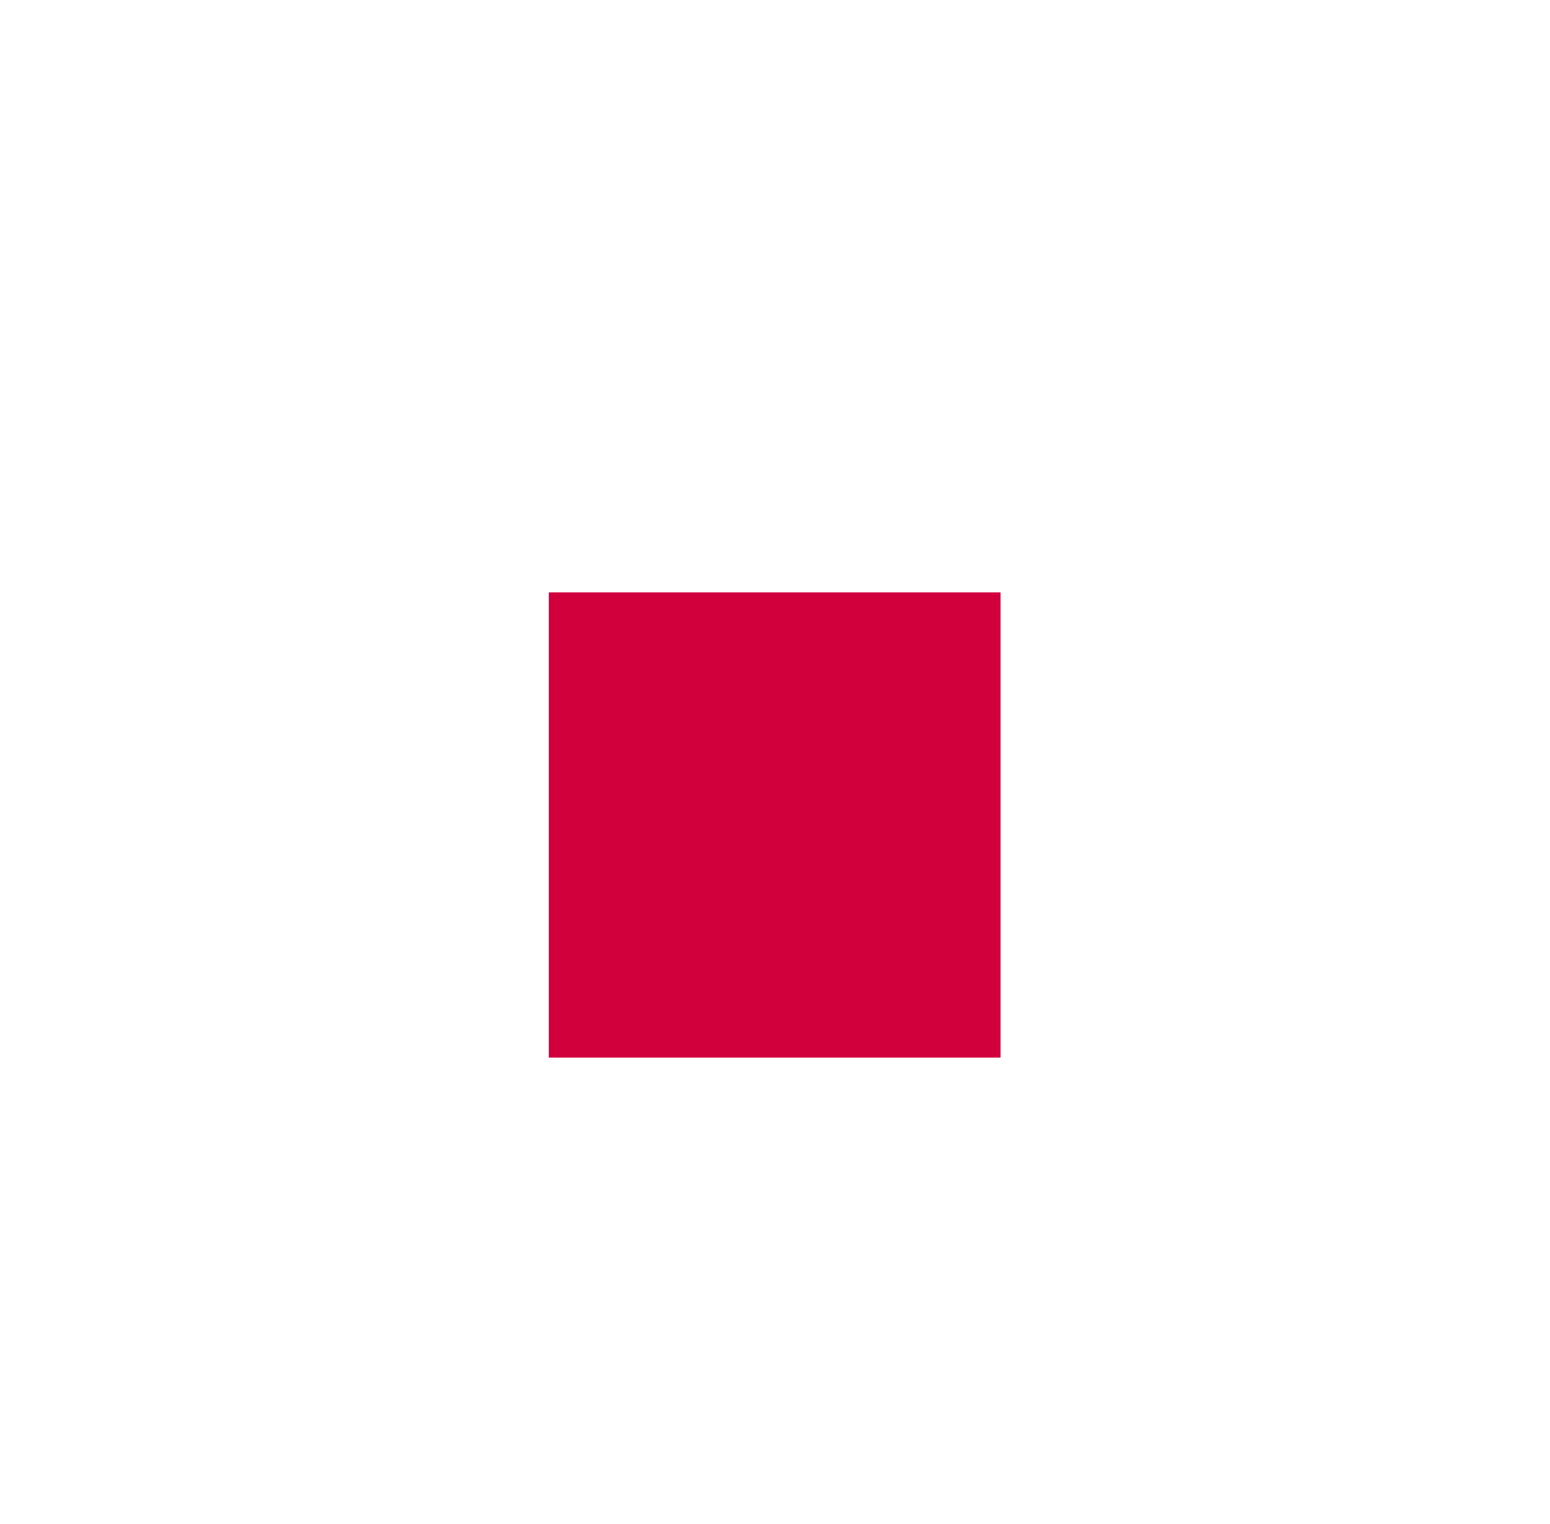 Shurgard Self Storage logo for dark backgrounds (transparent PNG)